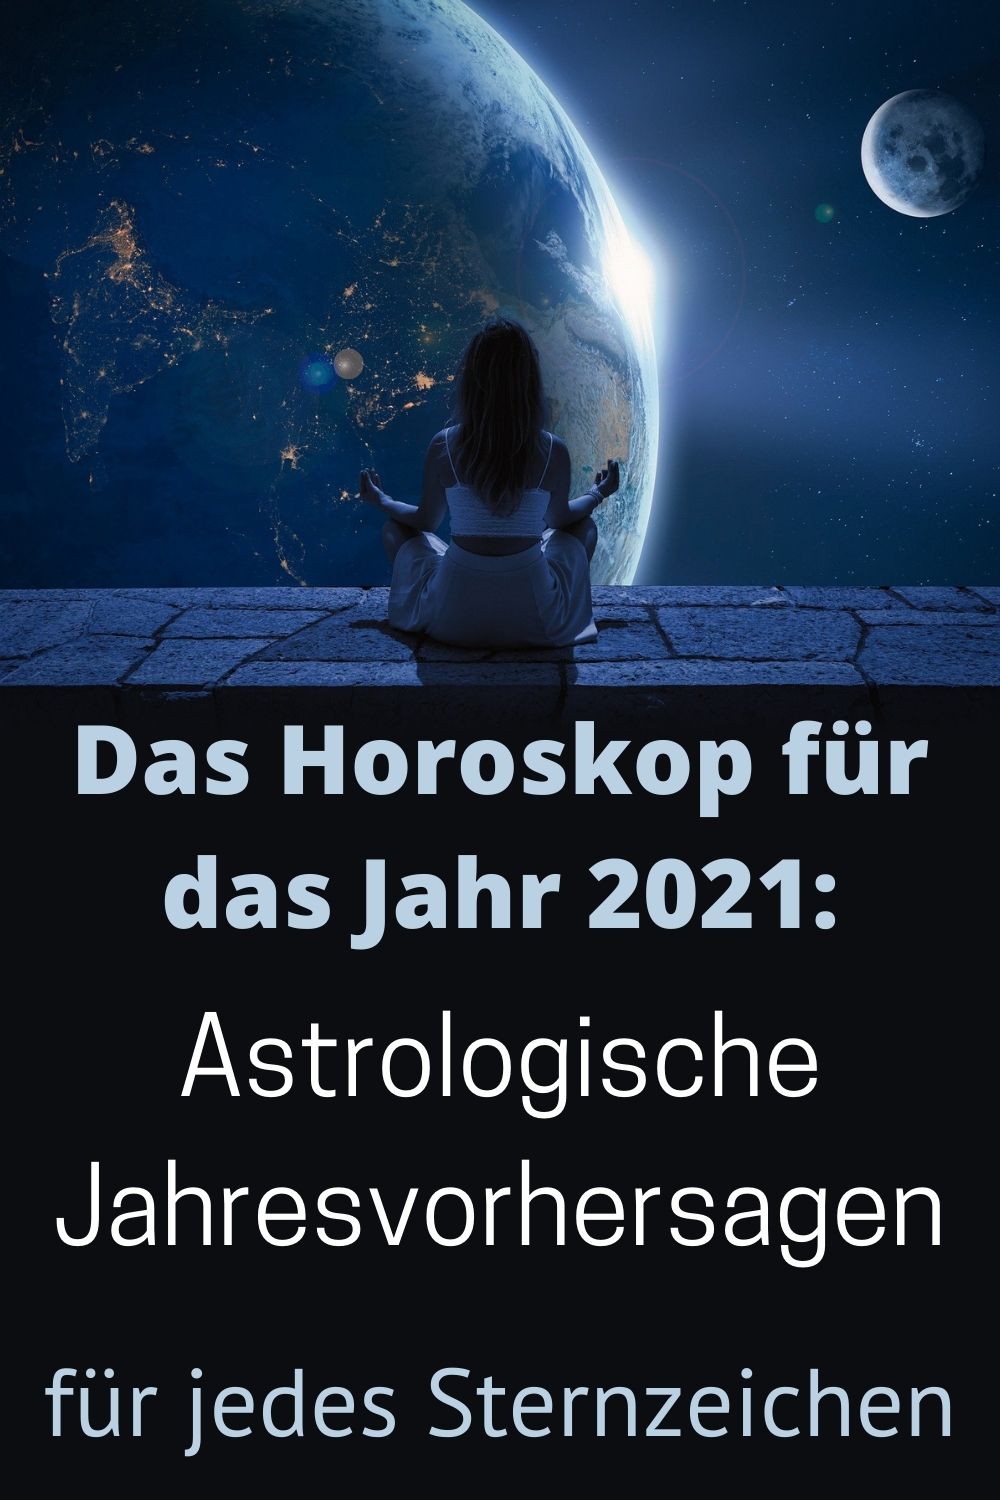 Das-Horoskop-für-das-Jahr-2021-Astrologische-Jahresvorhersagen-für-jedes-Sternzeichen